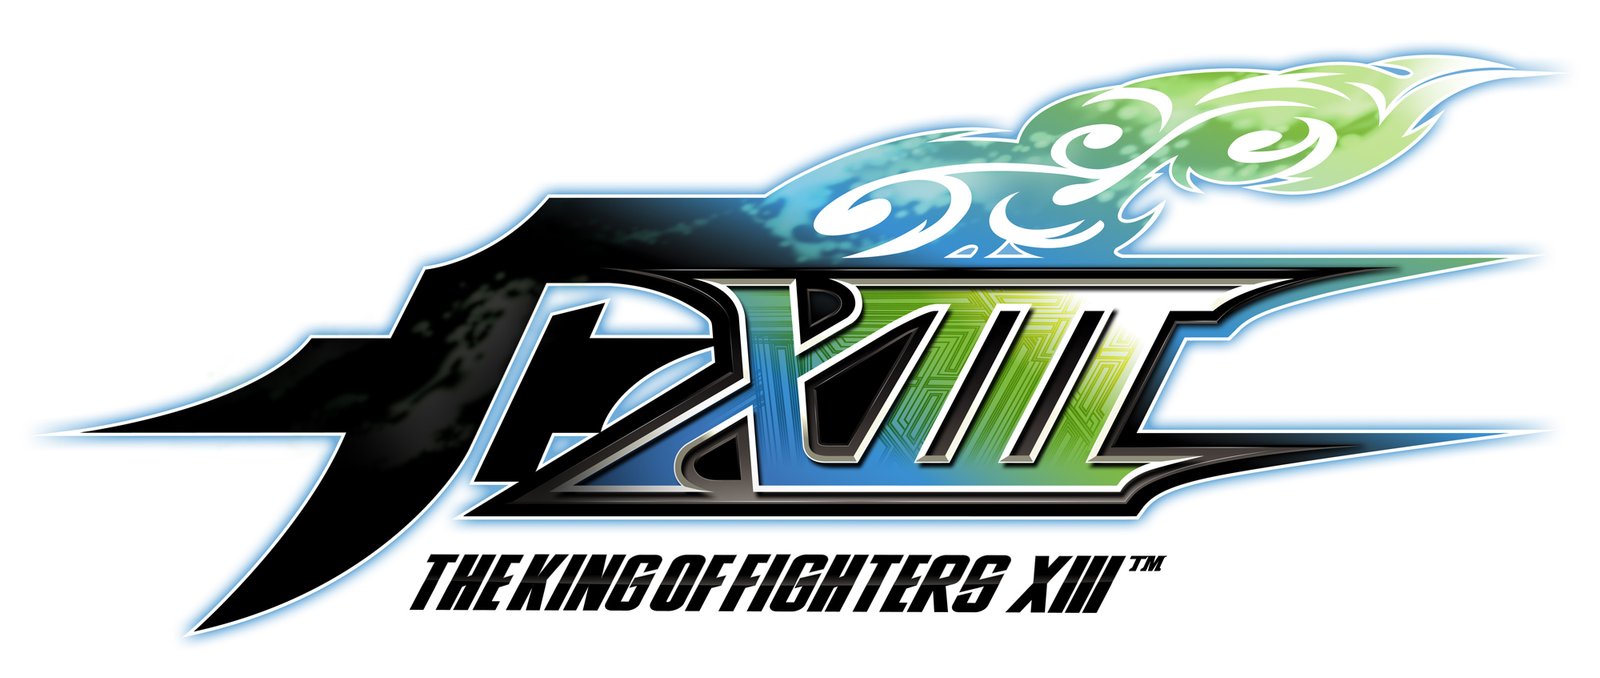 KOF XIII logo